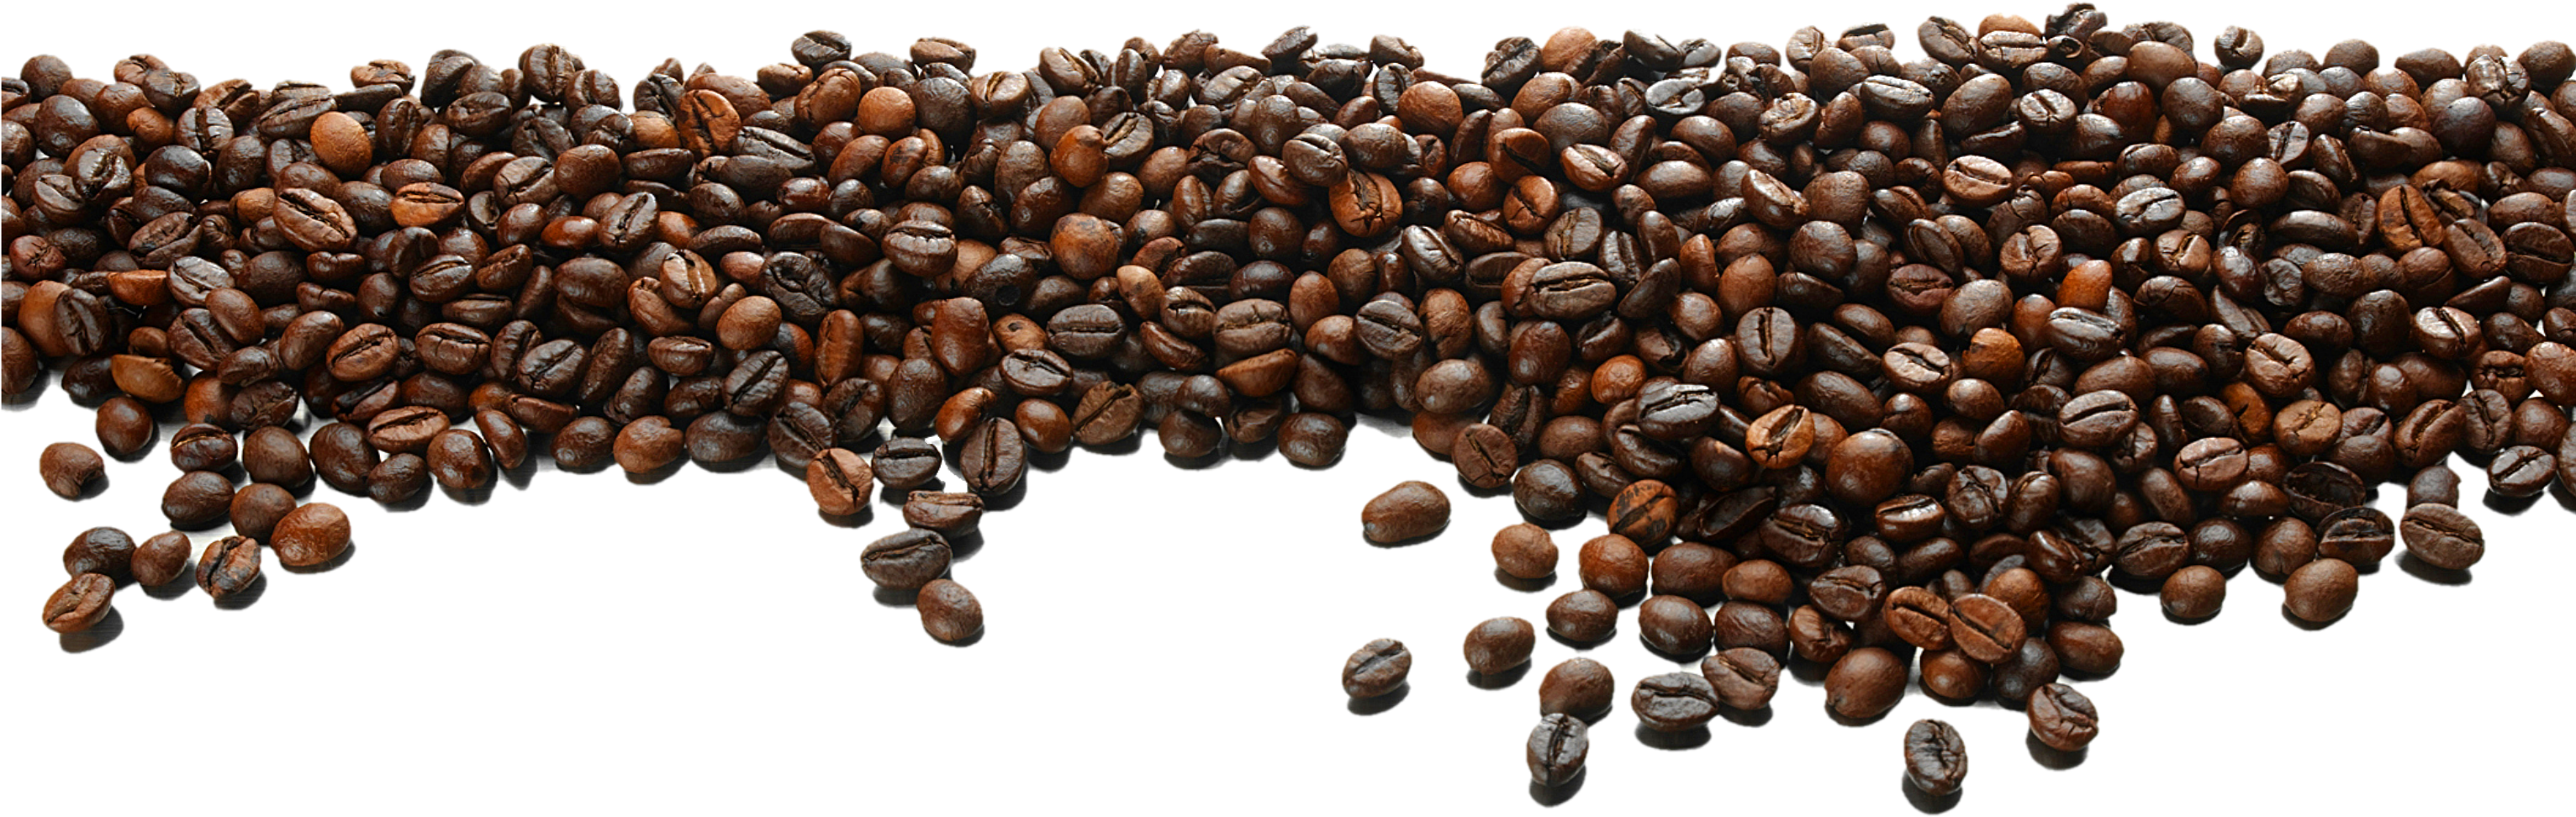 커피 콩